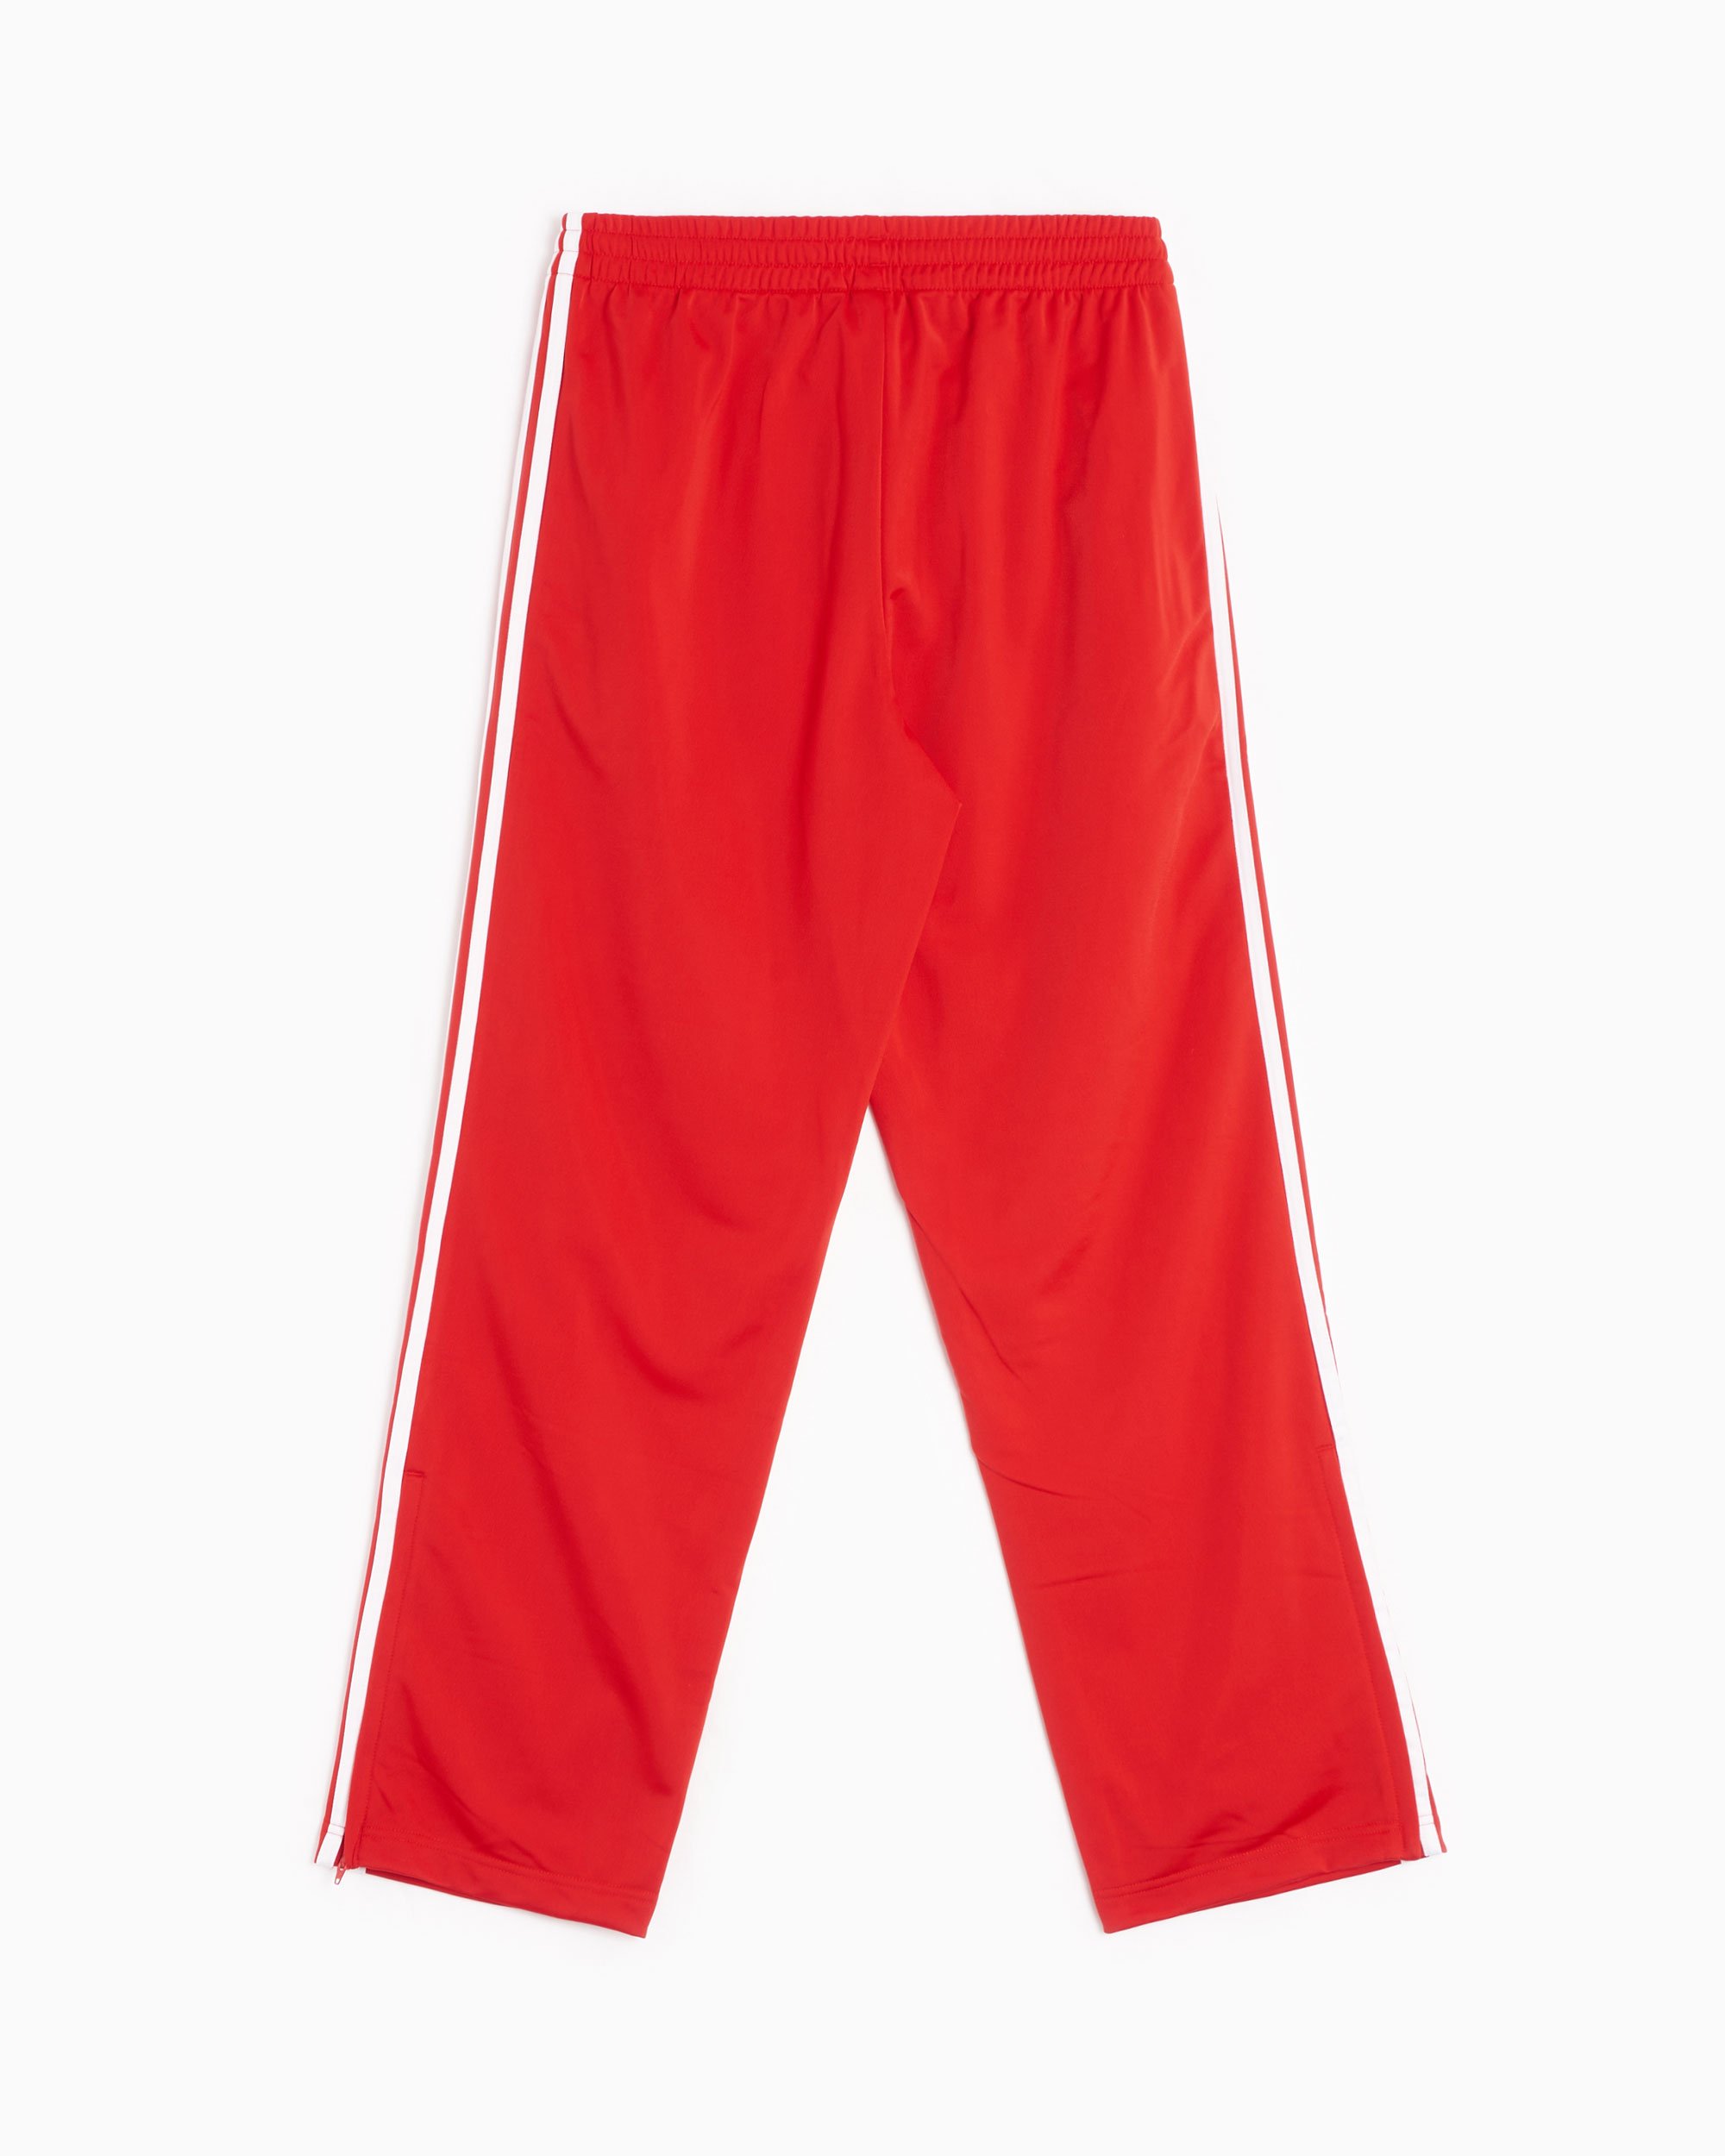 adidas Originals - adicolor - Survêtement - Rouge